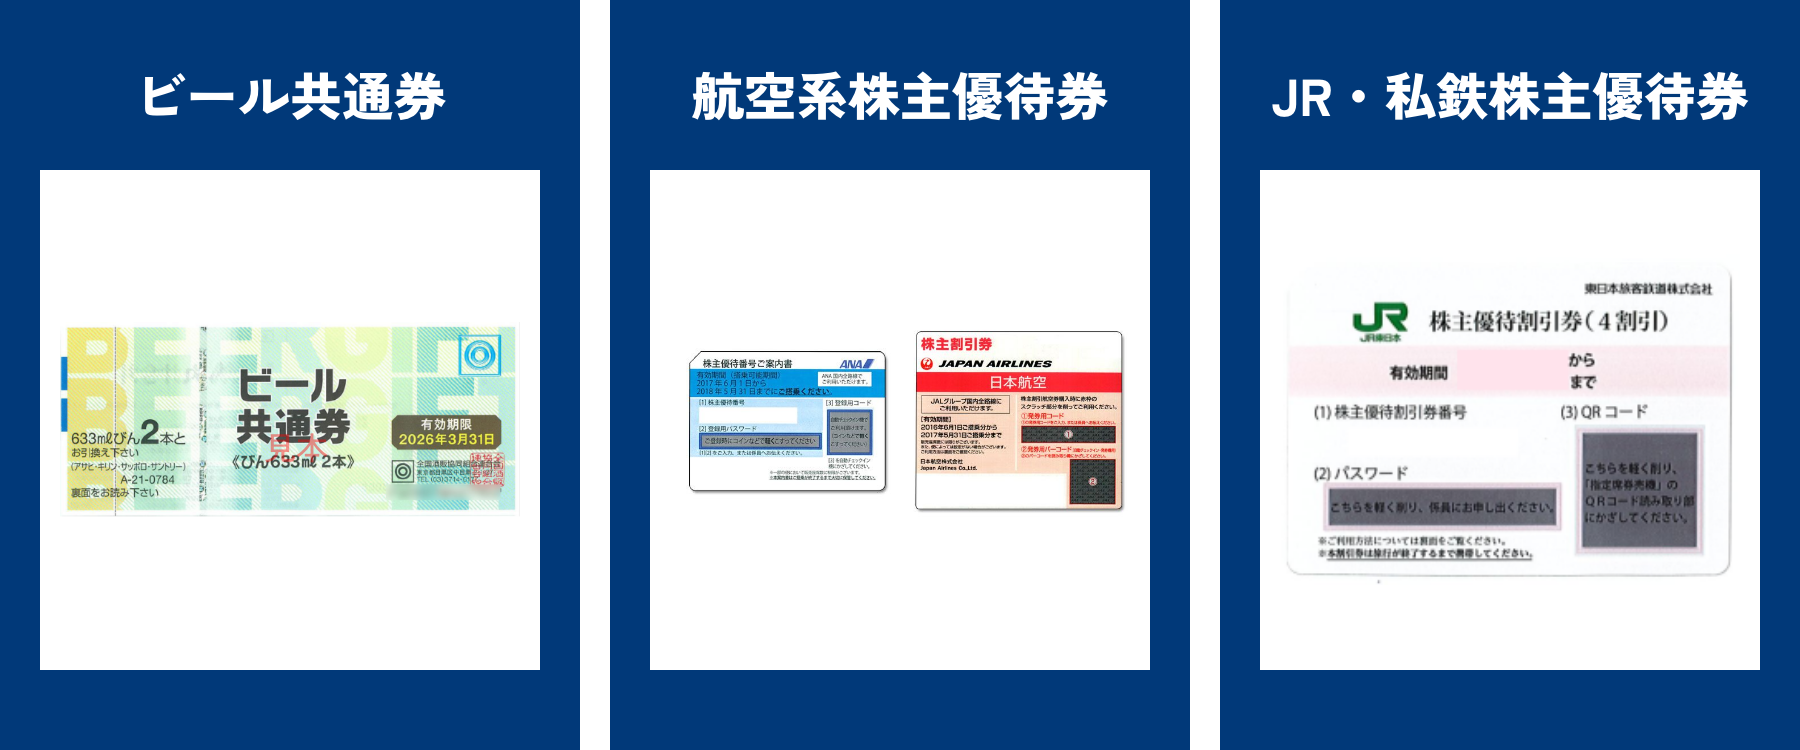 左:ビール共通券、中:航空系株主優待券、右:JR・私鉄株主優待権